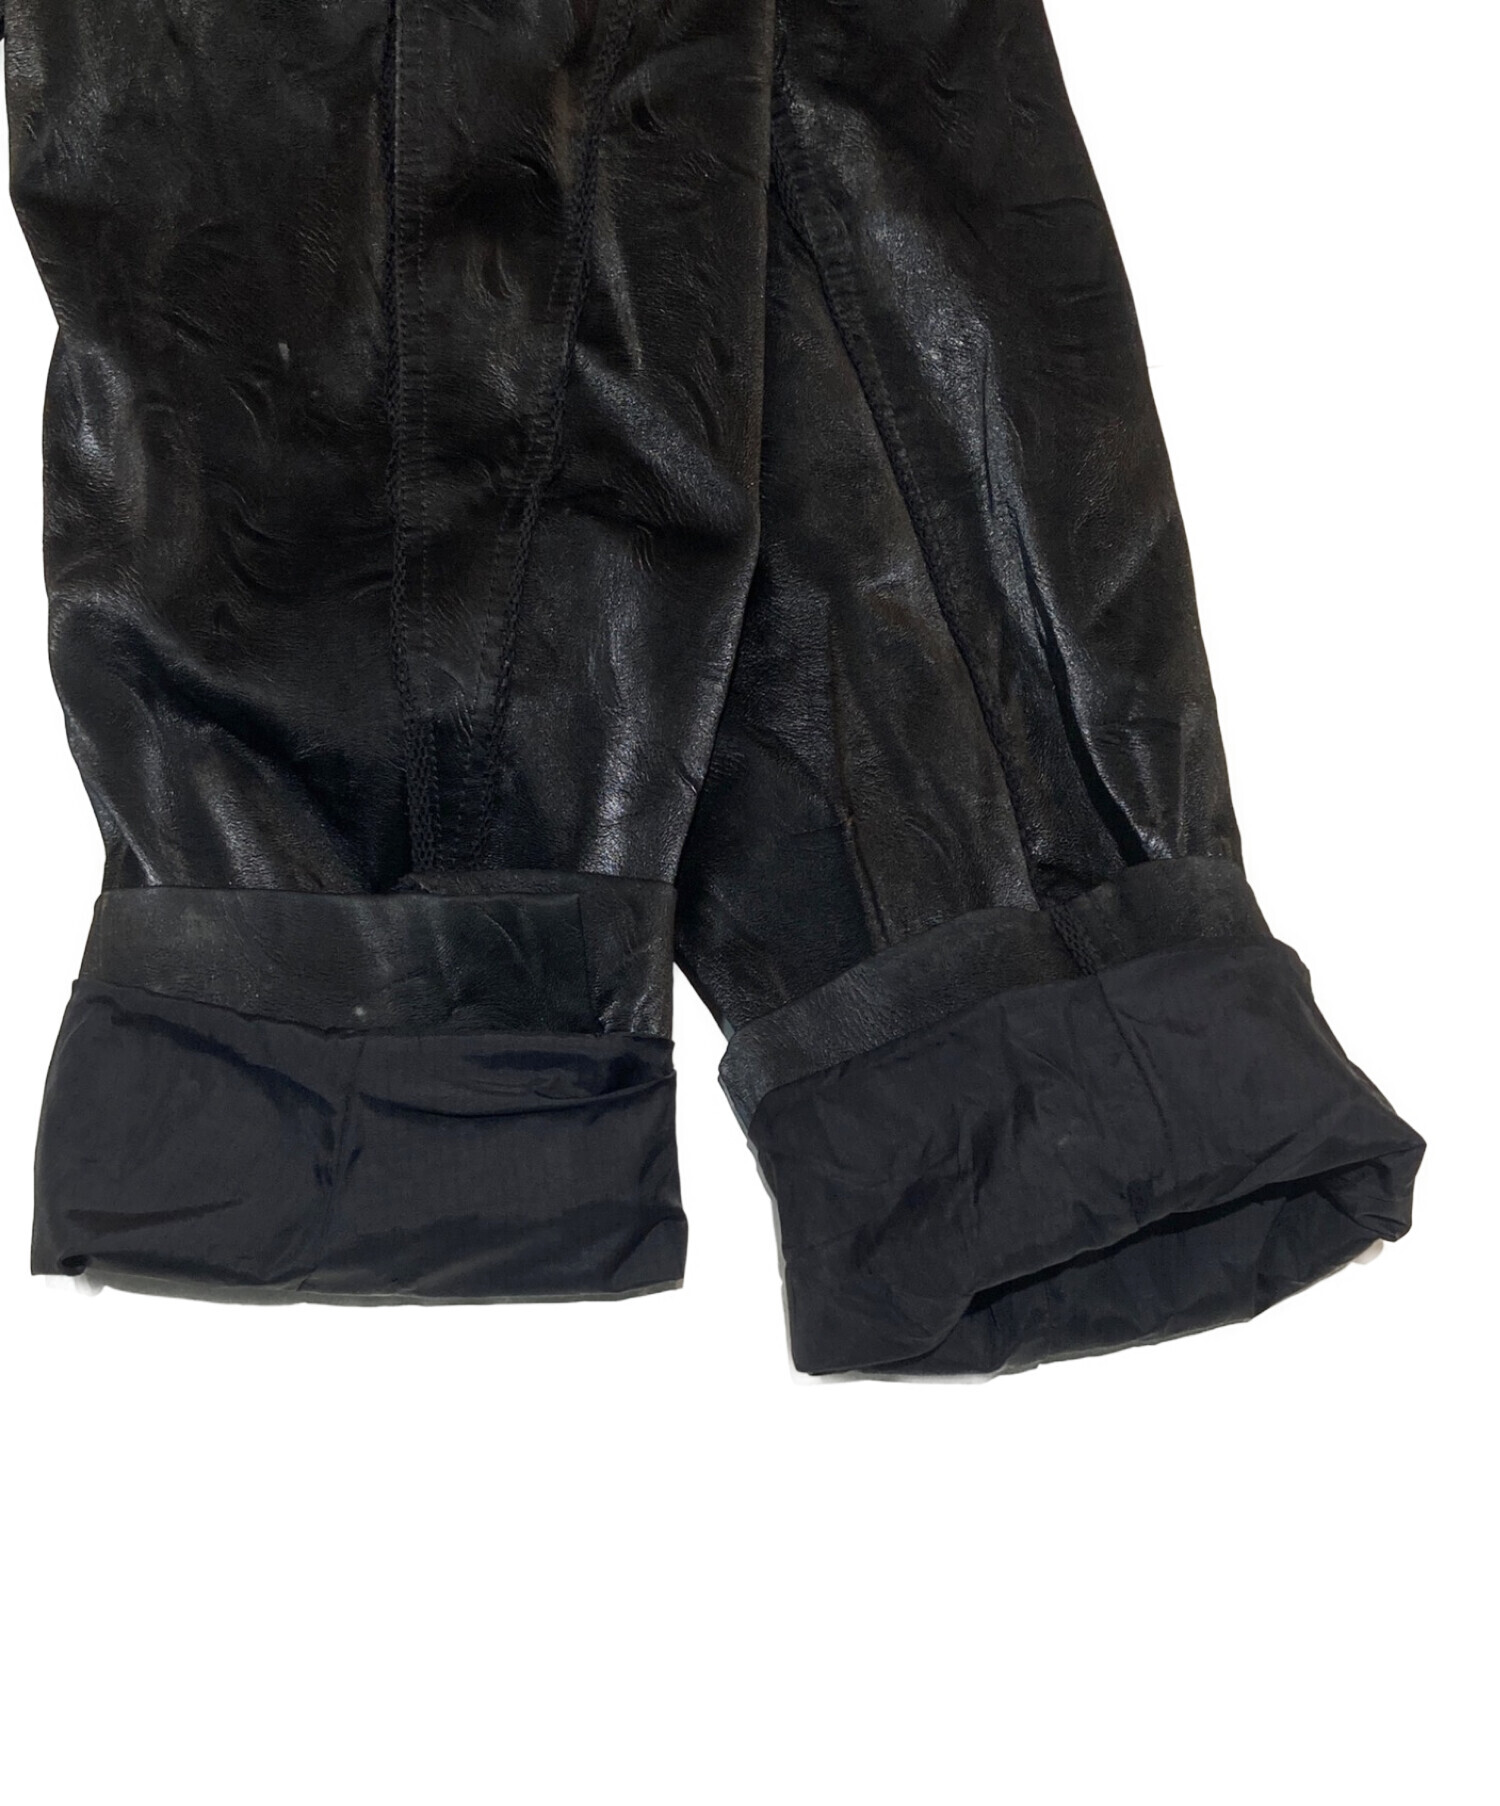 NUTEMPEROR (ニュートエンペラー) PUレザーデザインジャケット ブラック サイズ:3